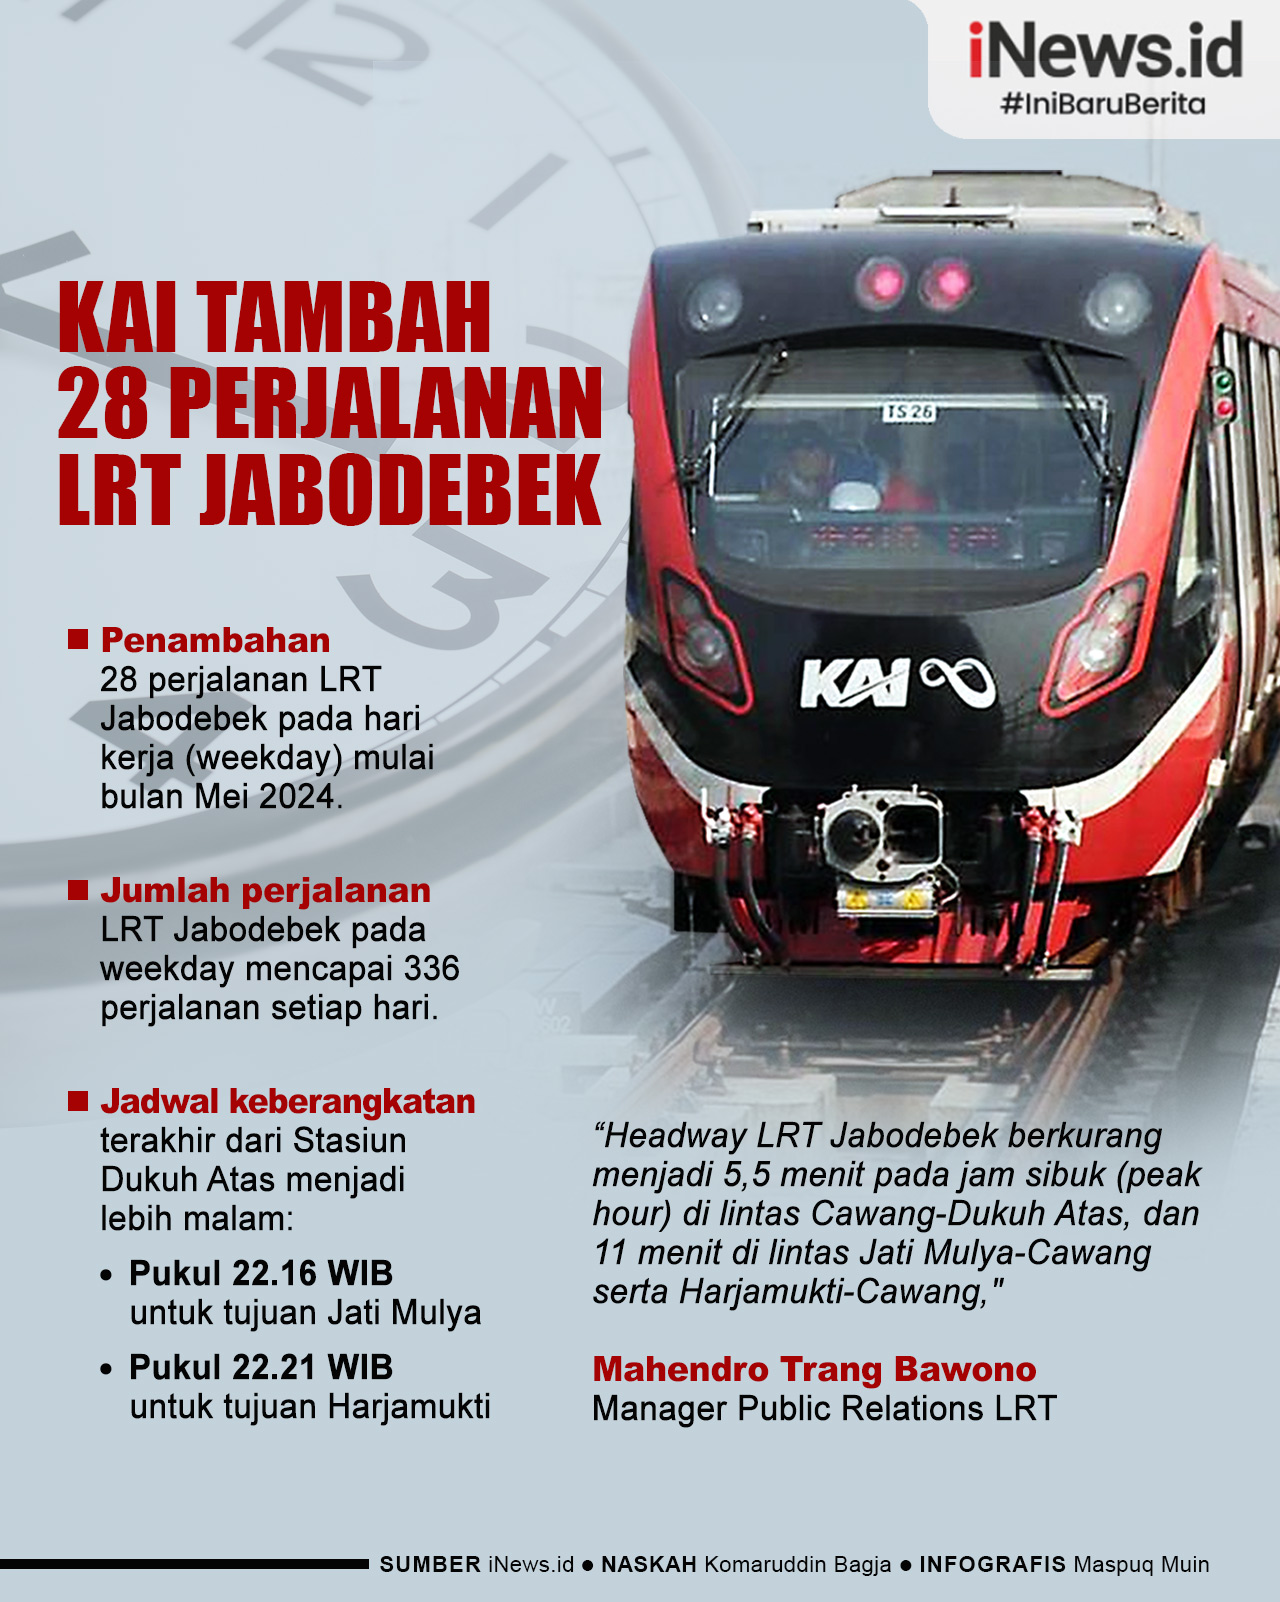 Infografis KAI Tambah 28 Perjalanan LRT Jabodebek